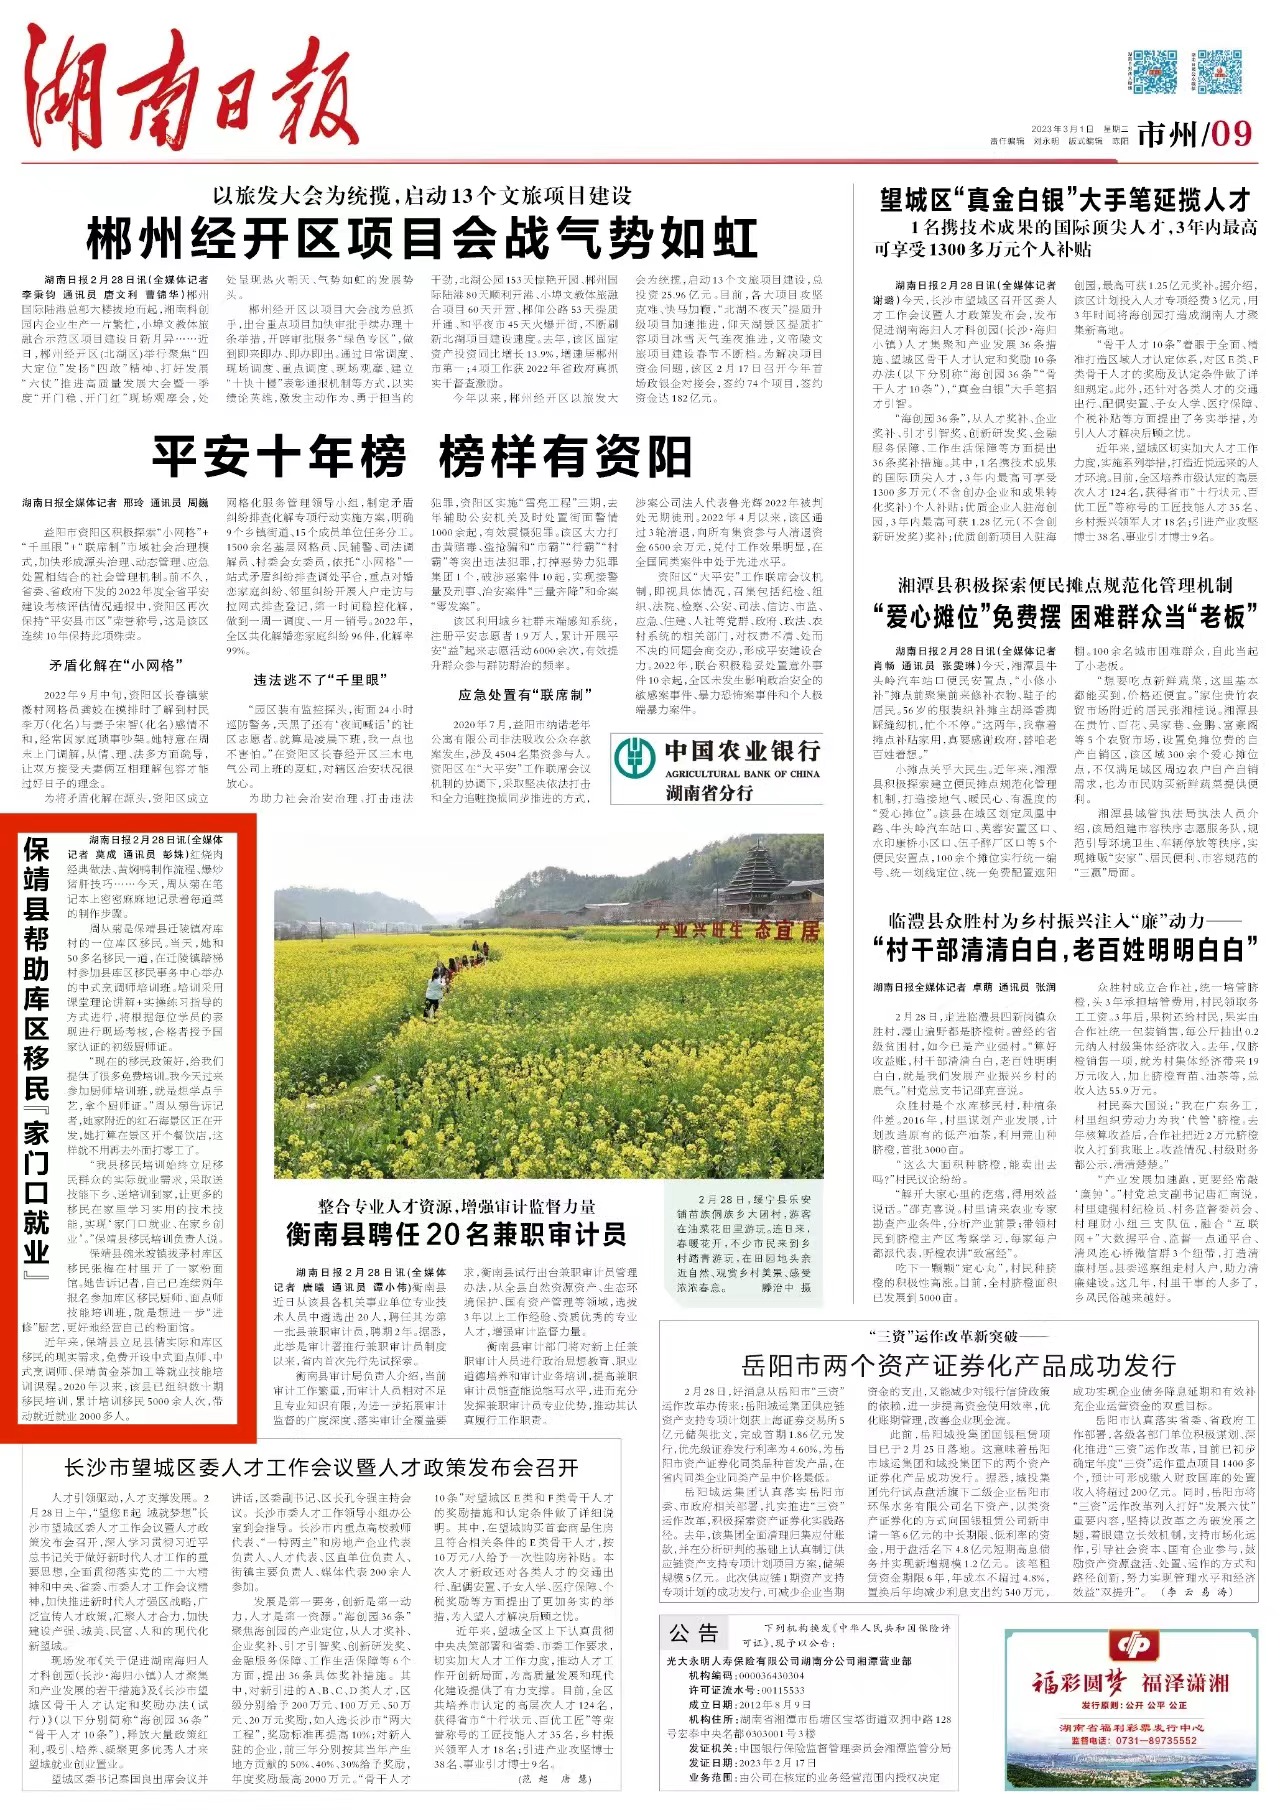 湖南日报丨保靖县帮助库区移民“家门口就业”